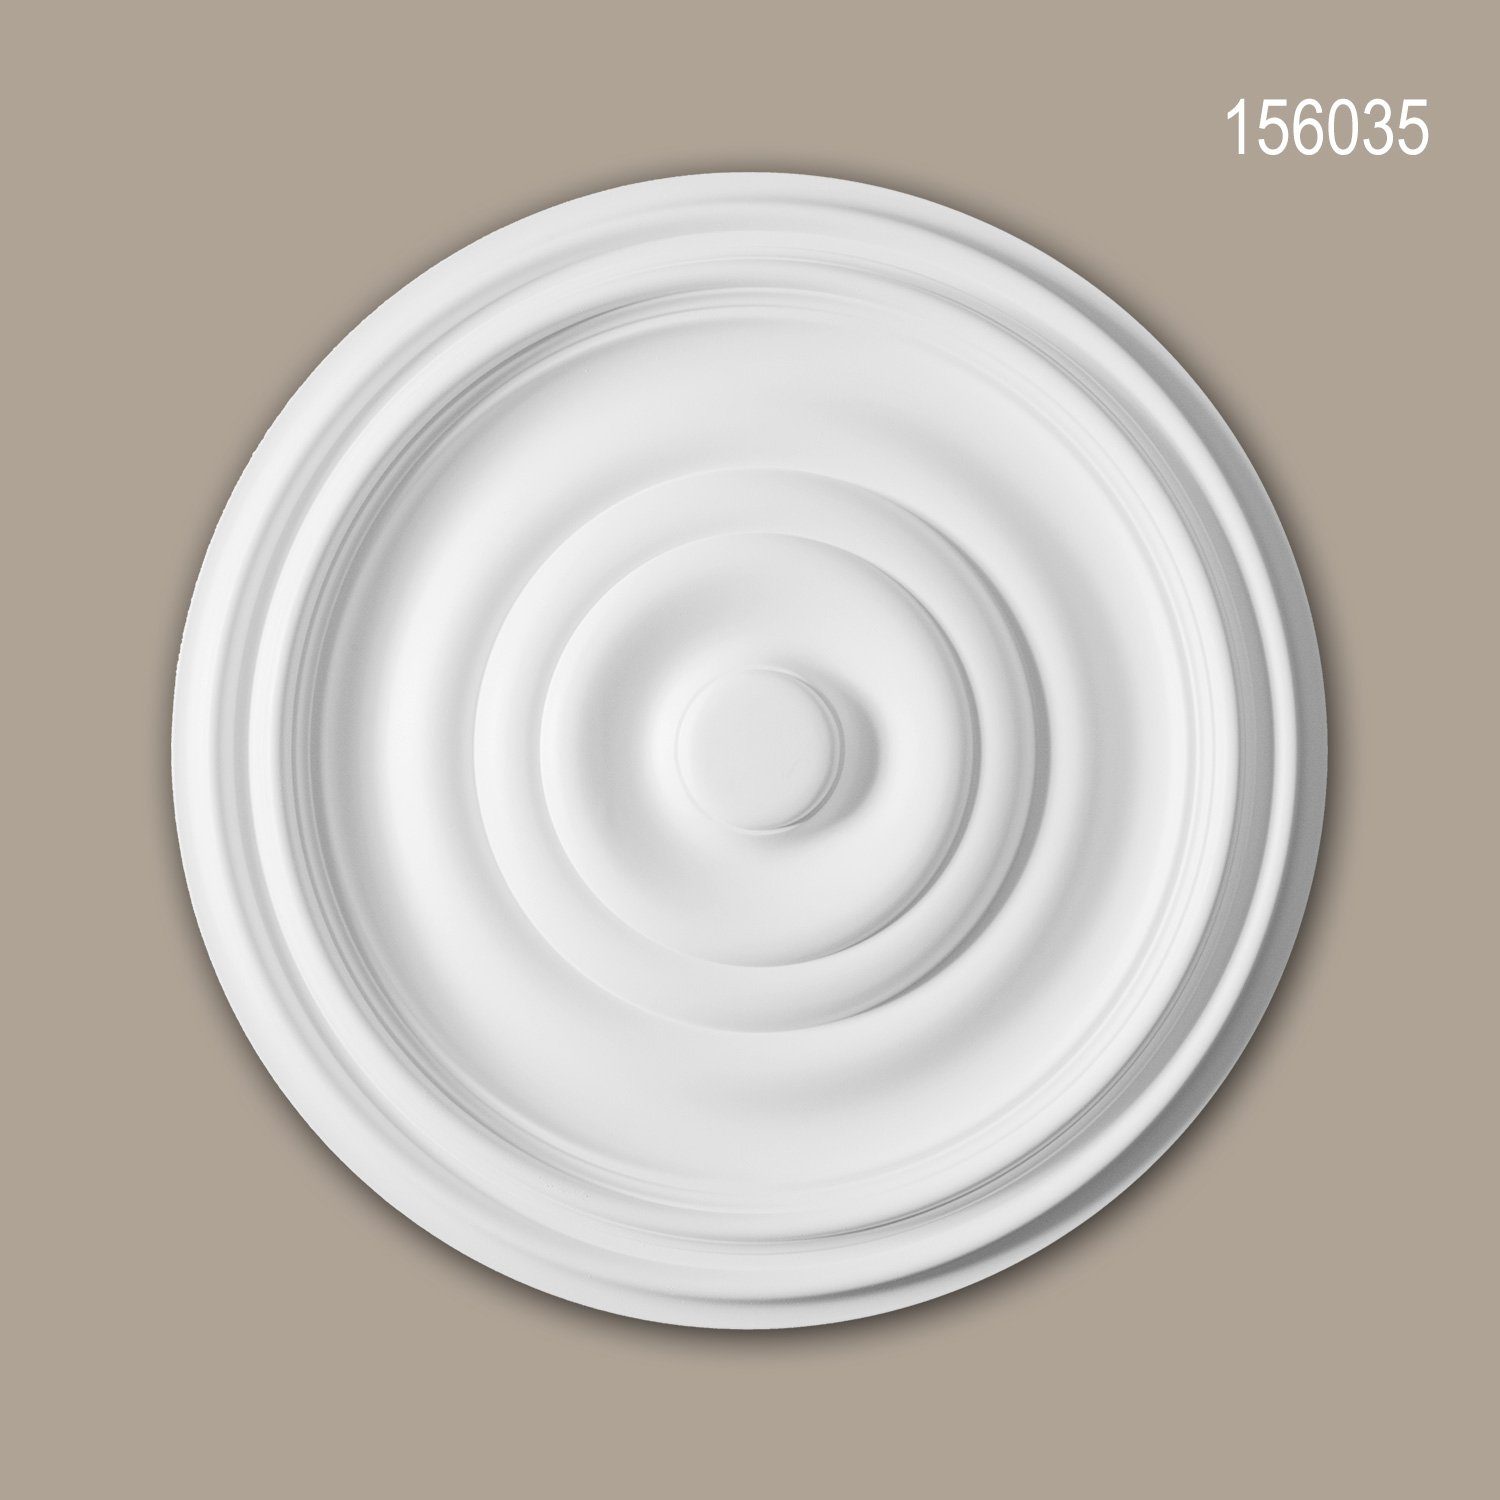 Profhome Decken-Rosette 156035 (Rosette, 1 St., Deckenrosette, Medallion, Stuckrosette, Deckenelement, Zierelement, Durchmesser 48,5 cm), weiß, vorgrundiert, Stil: Zeitlos / Klassisch